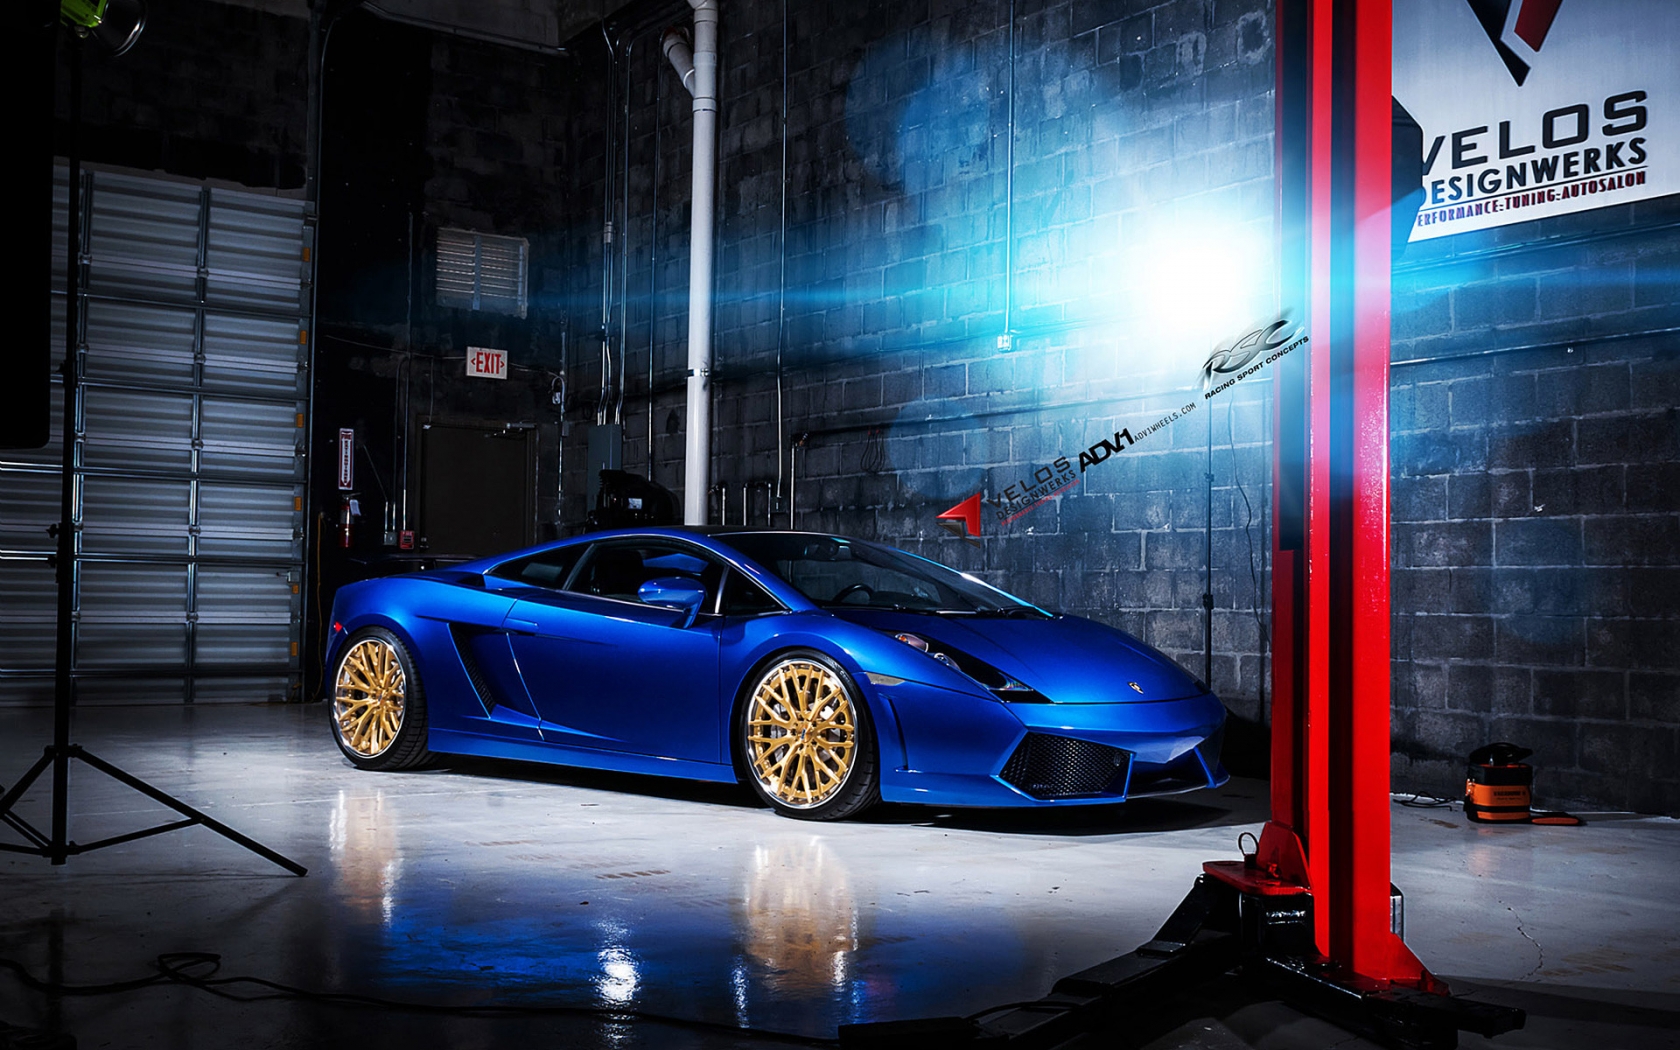 Blue Lamborghini Gallardo ADV10 for 1680 x 1050 widescreen resolution